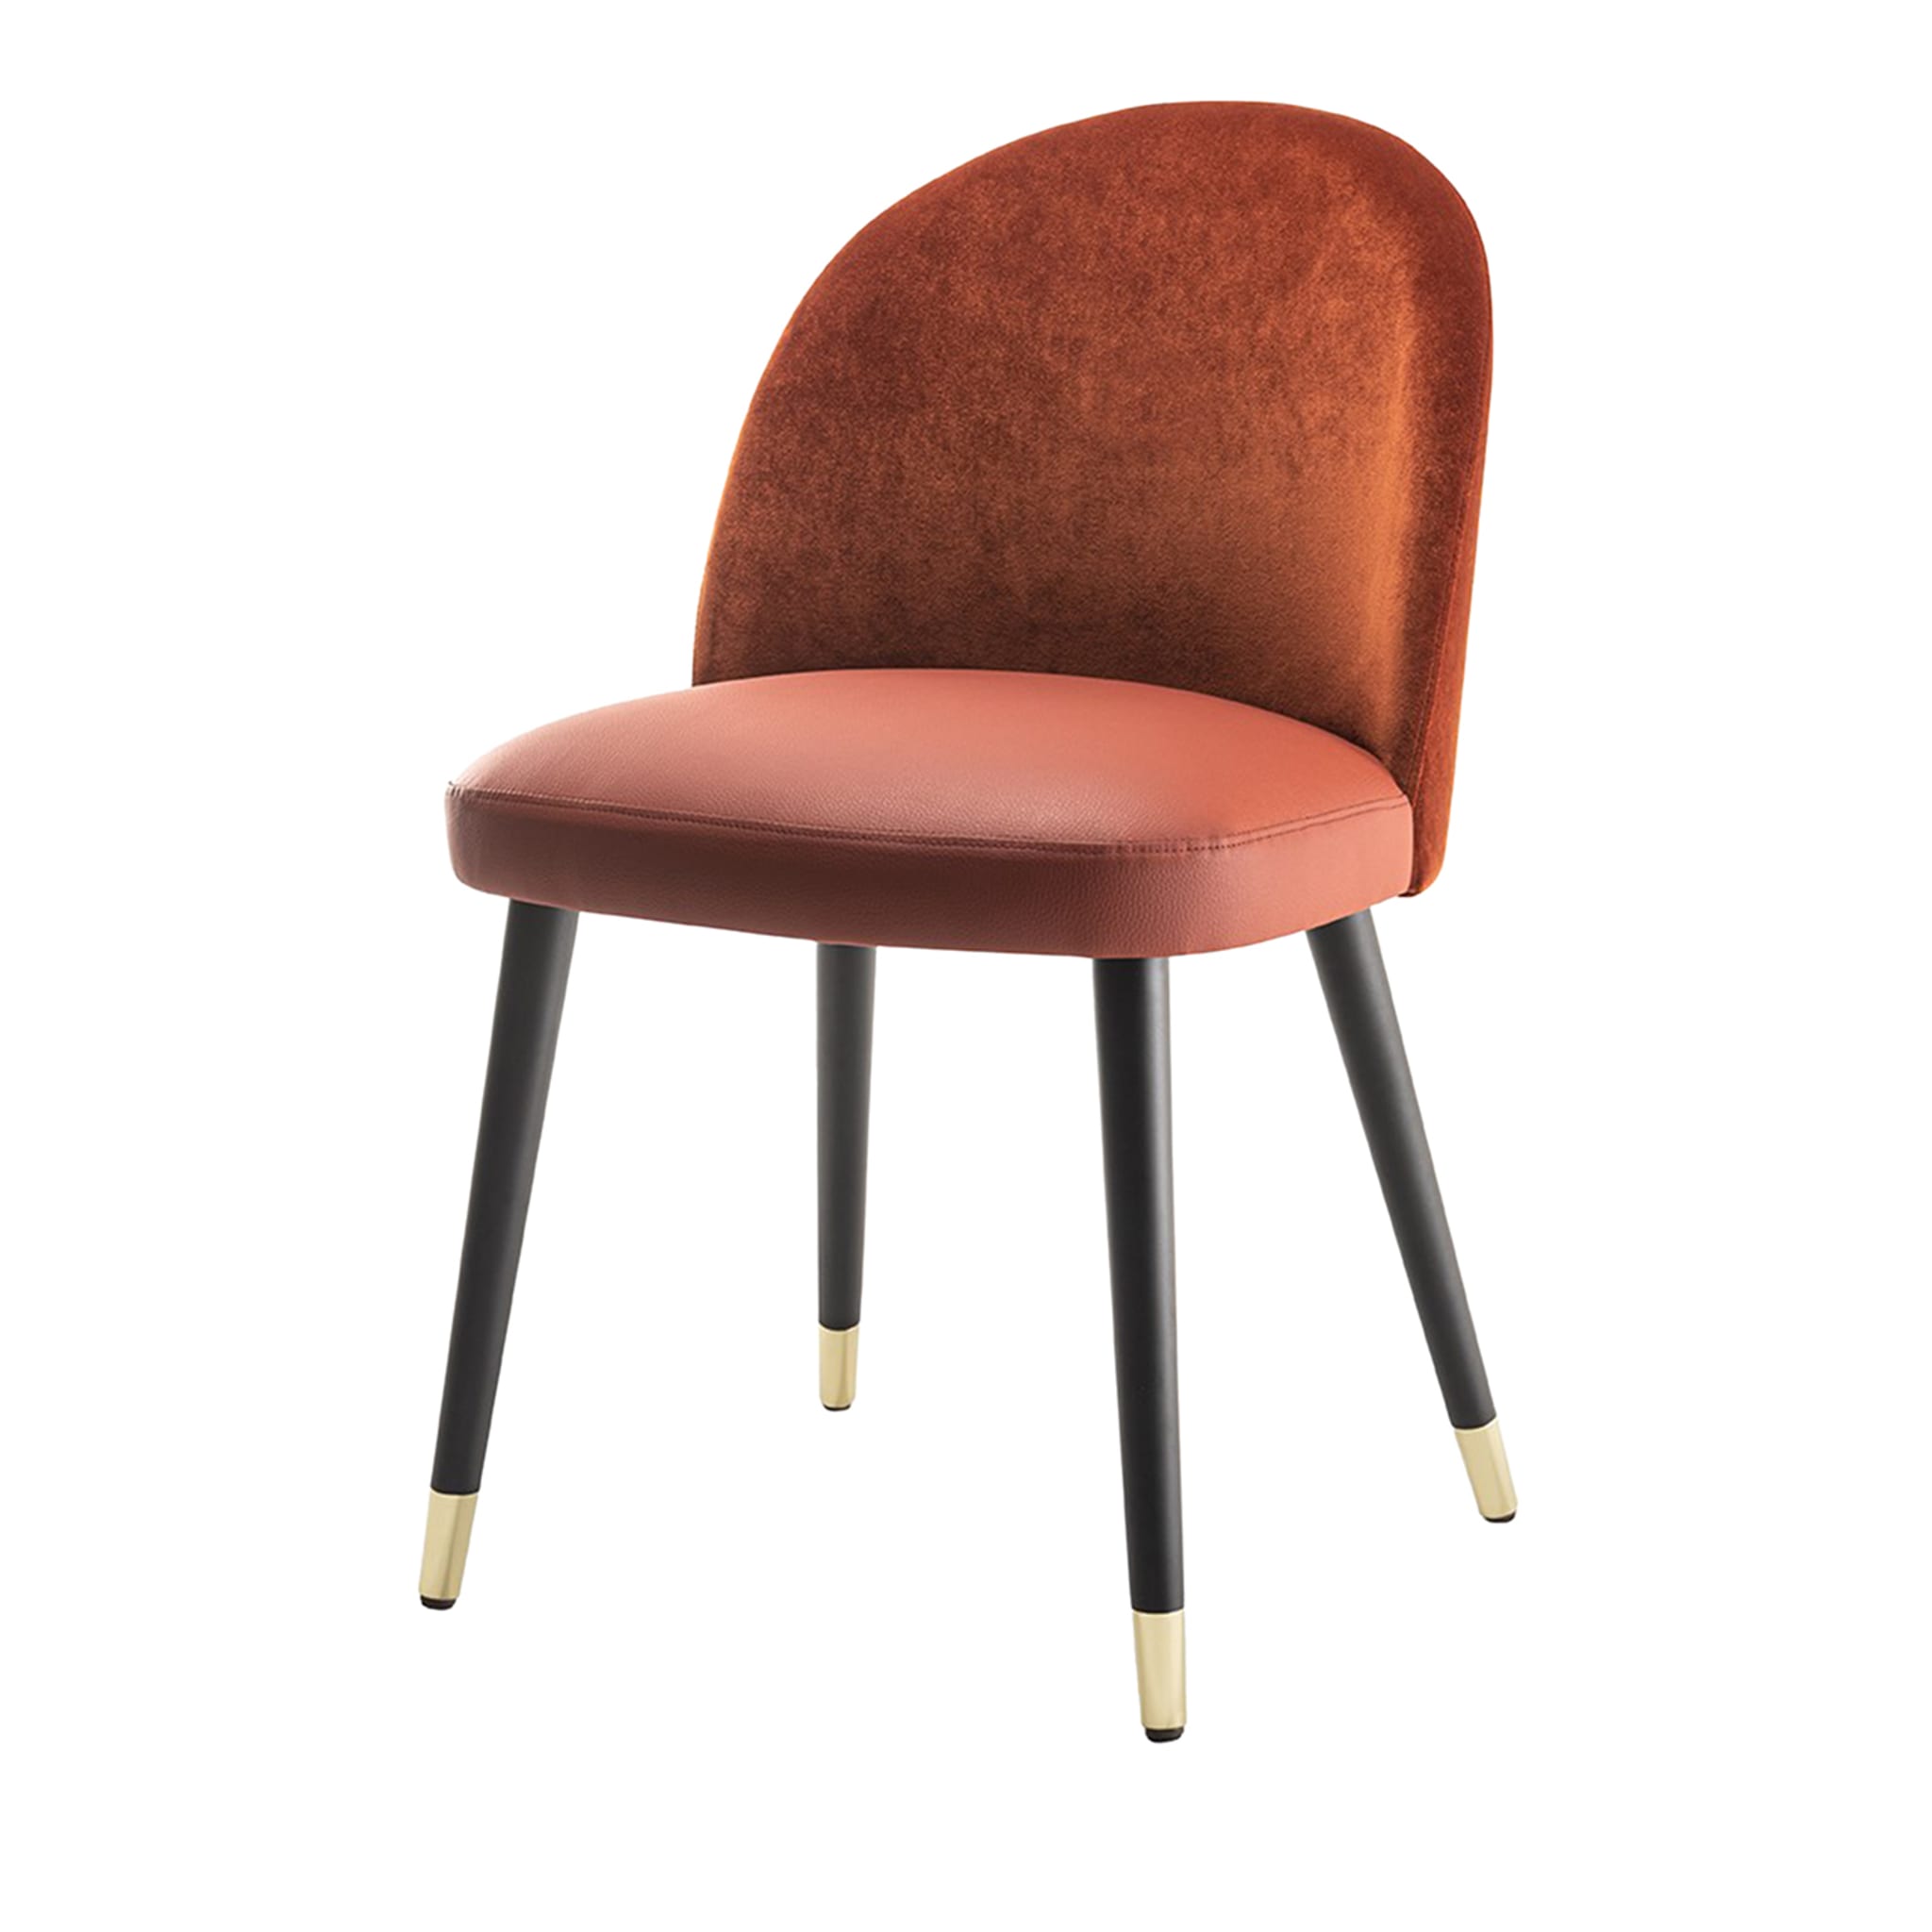 AES 892 Orange Stuhl von Claudio Perin - Hauptansicht